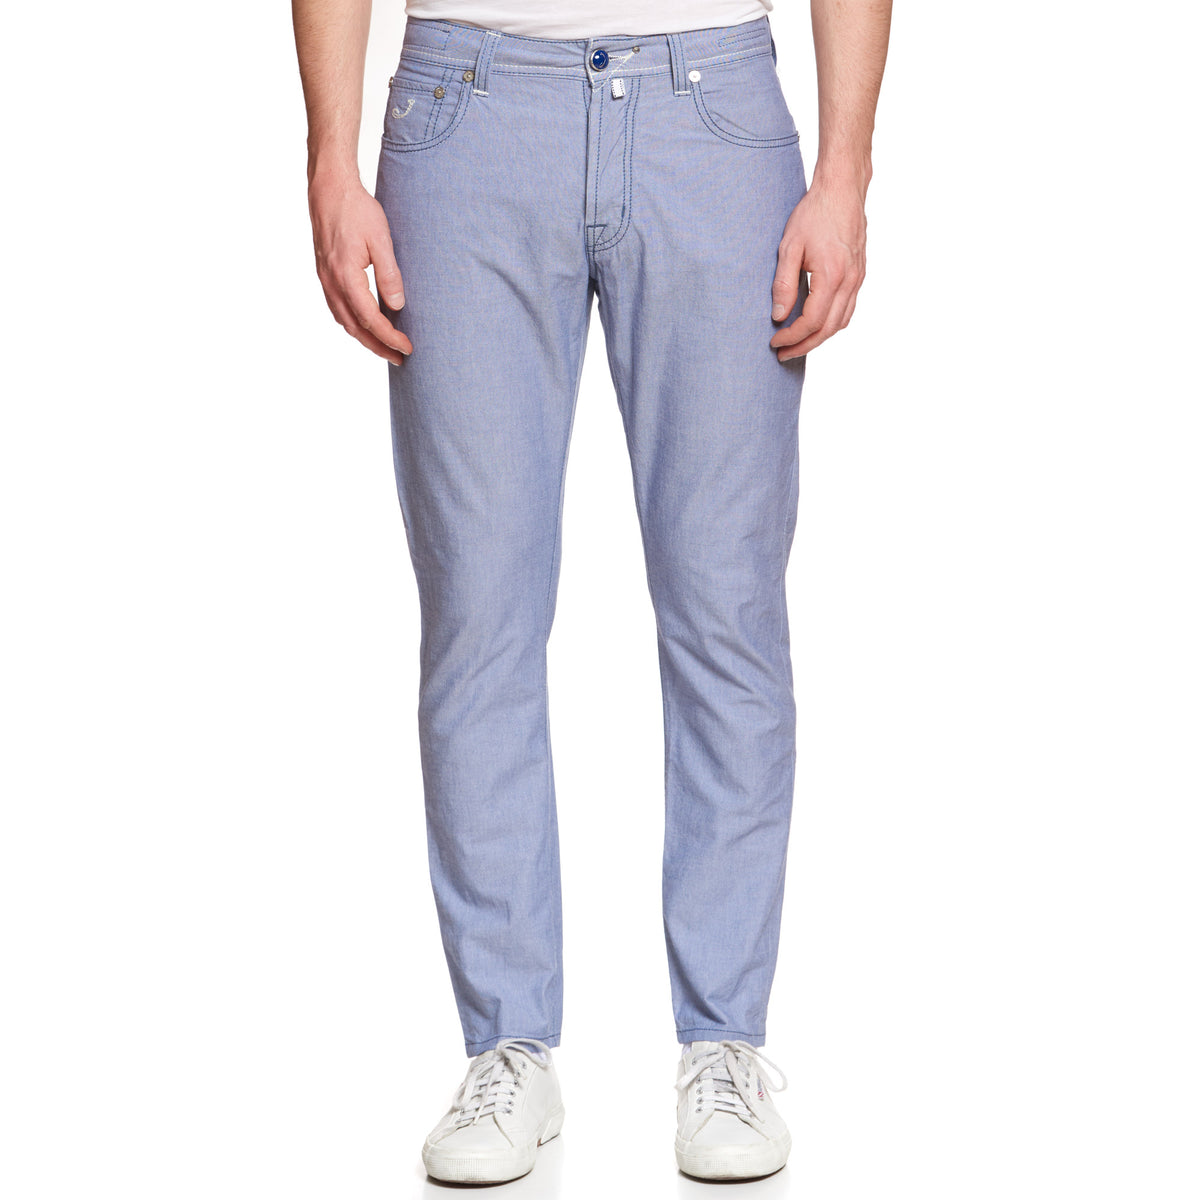 JACOB COHEN J688 Comfort Blue Cotton Stretch Slim Fit Jeans Pants US 33